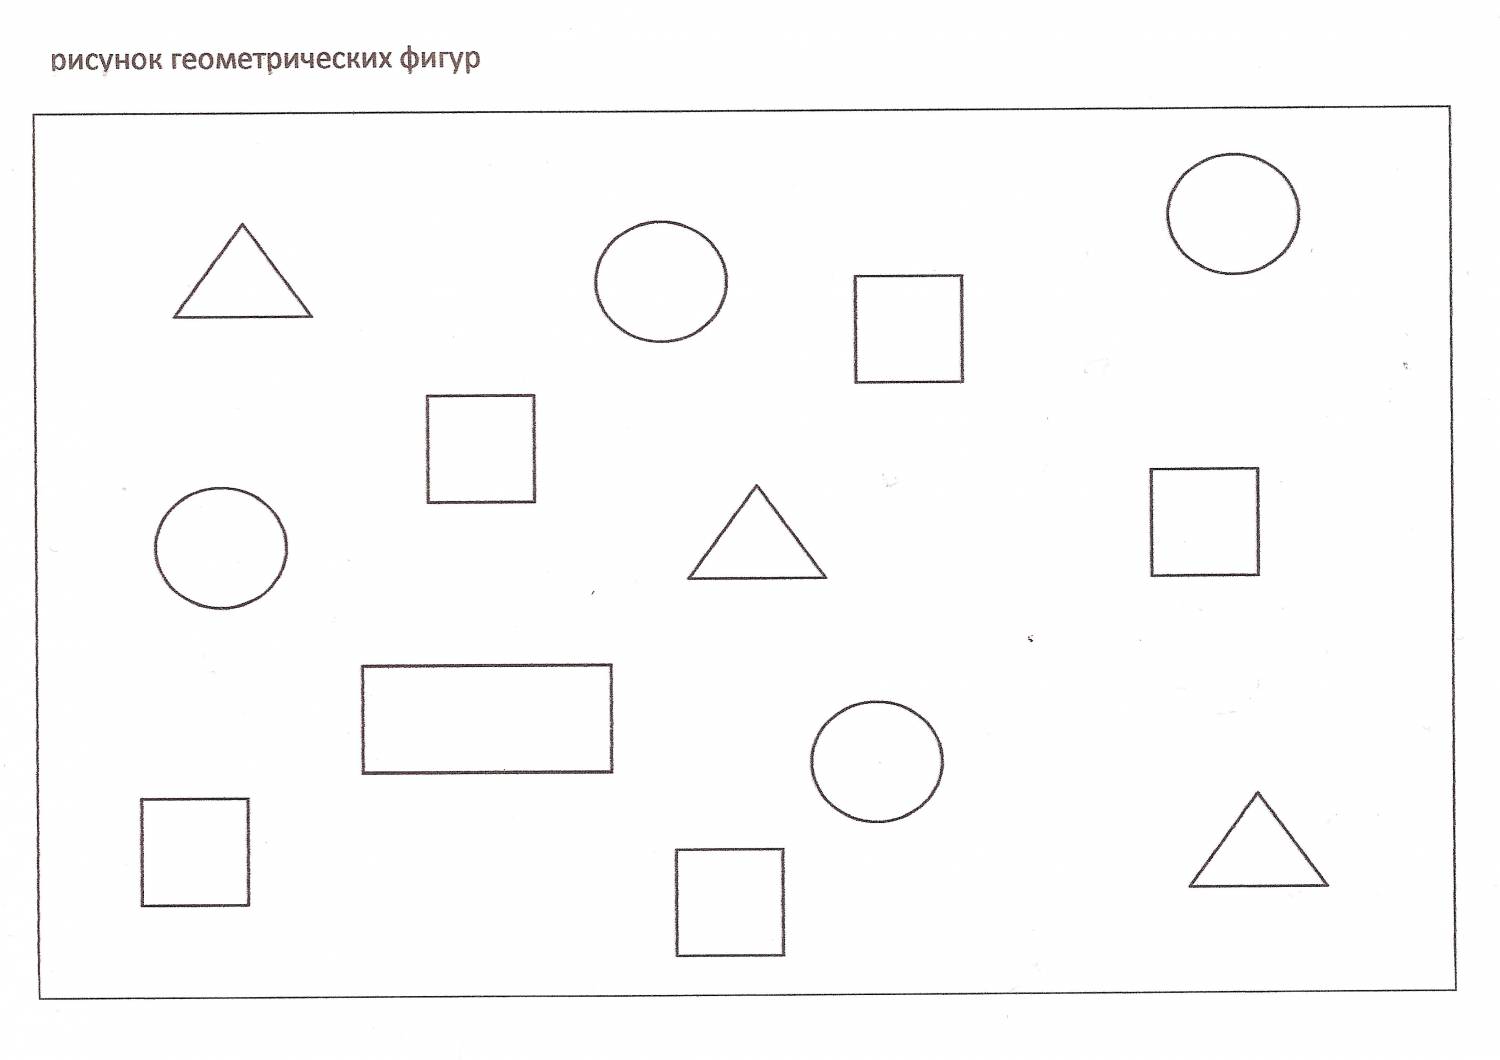 Дорисуй или зачеркни кружки квадраты или. Геометрические фигуры задания. Геометрические фигуры задания для детей. Задания по геометрическим фигурам для дошкольников. Занятие для дошкольников геометрические фигуры.